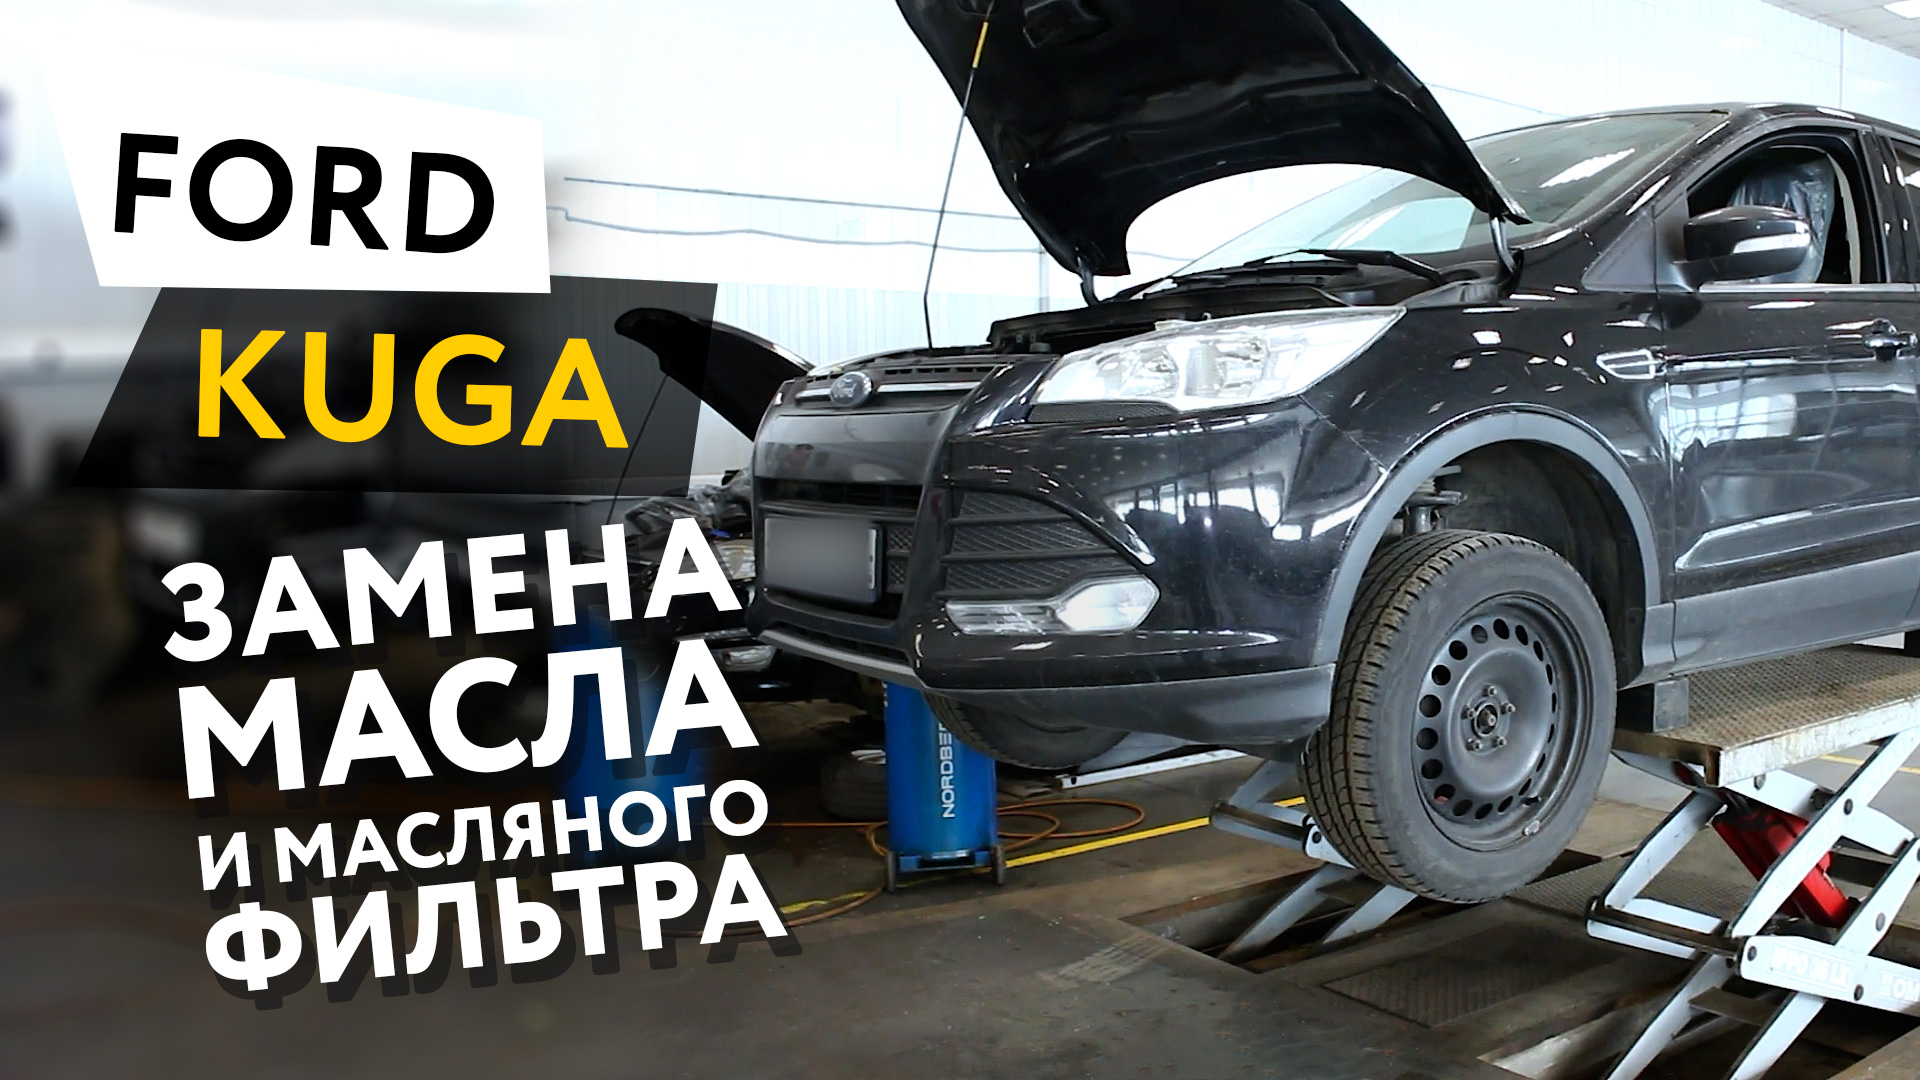 Замена масла и масляного фильтра (масляный сервис) в двигателе автомобиля Ford Kuga 2,5